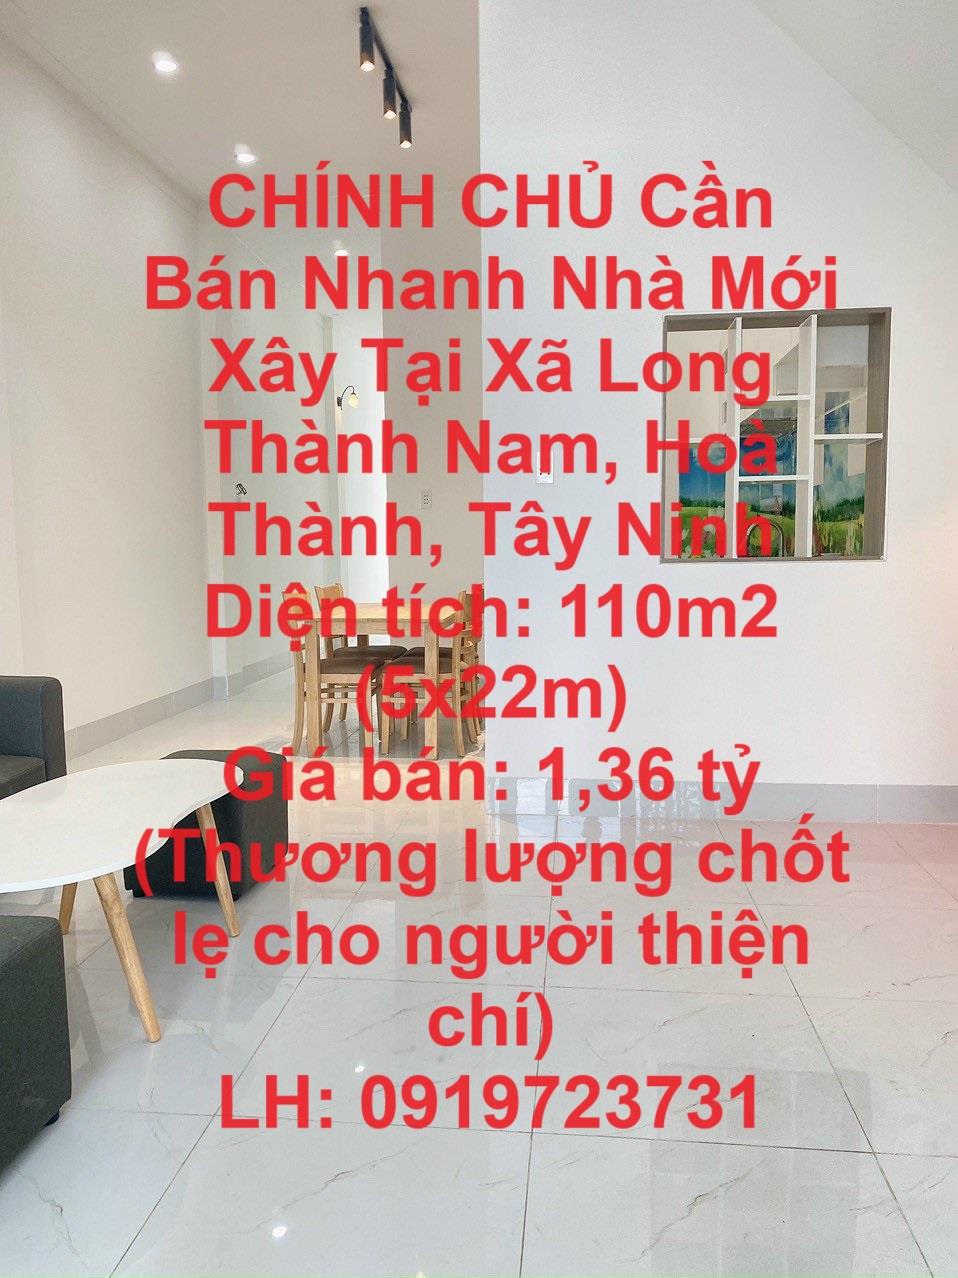 CHÍNH CHỦ Cần Bán Nhanh Nhà Mới Xây Tại Xã Long Thành Nam, Hoà Thành, Tây Ninh1532243